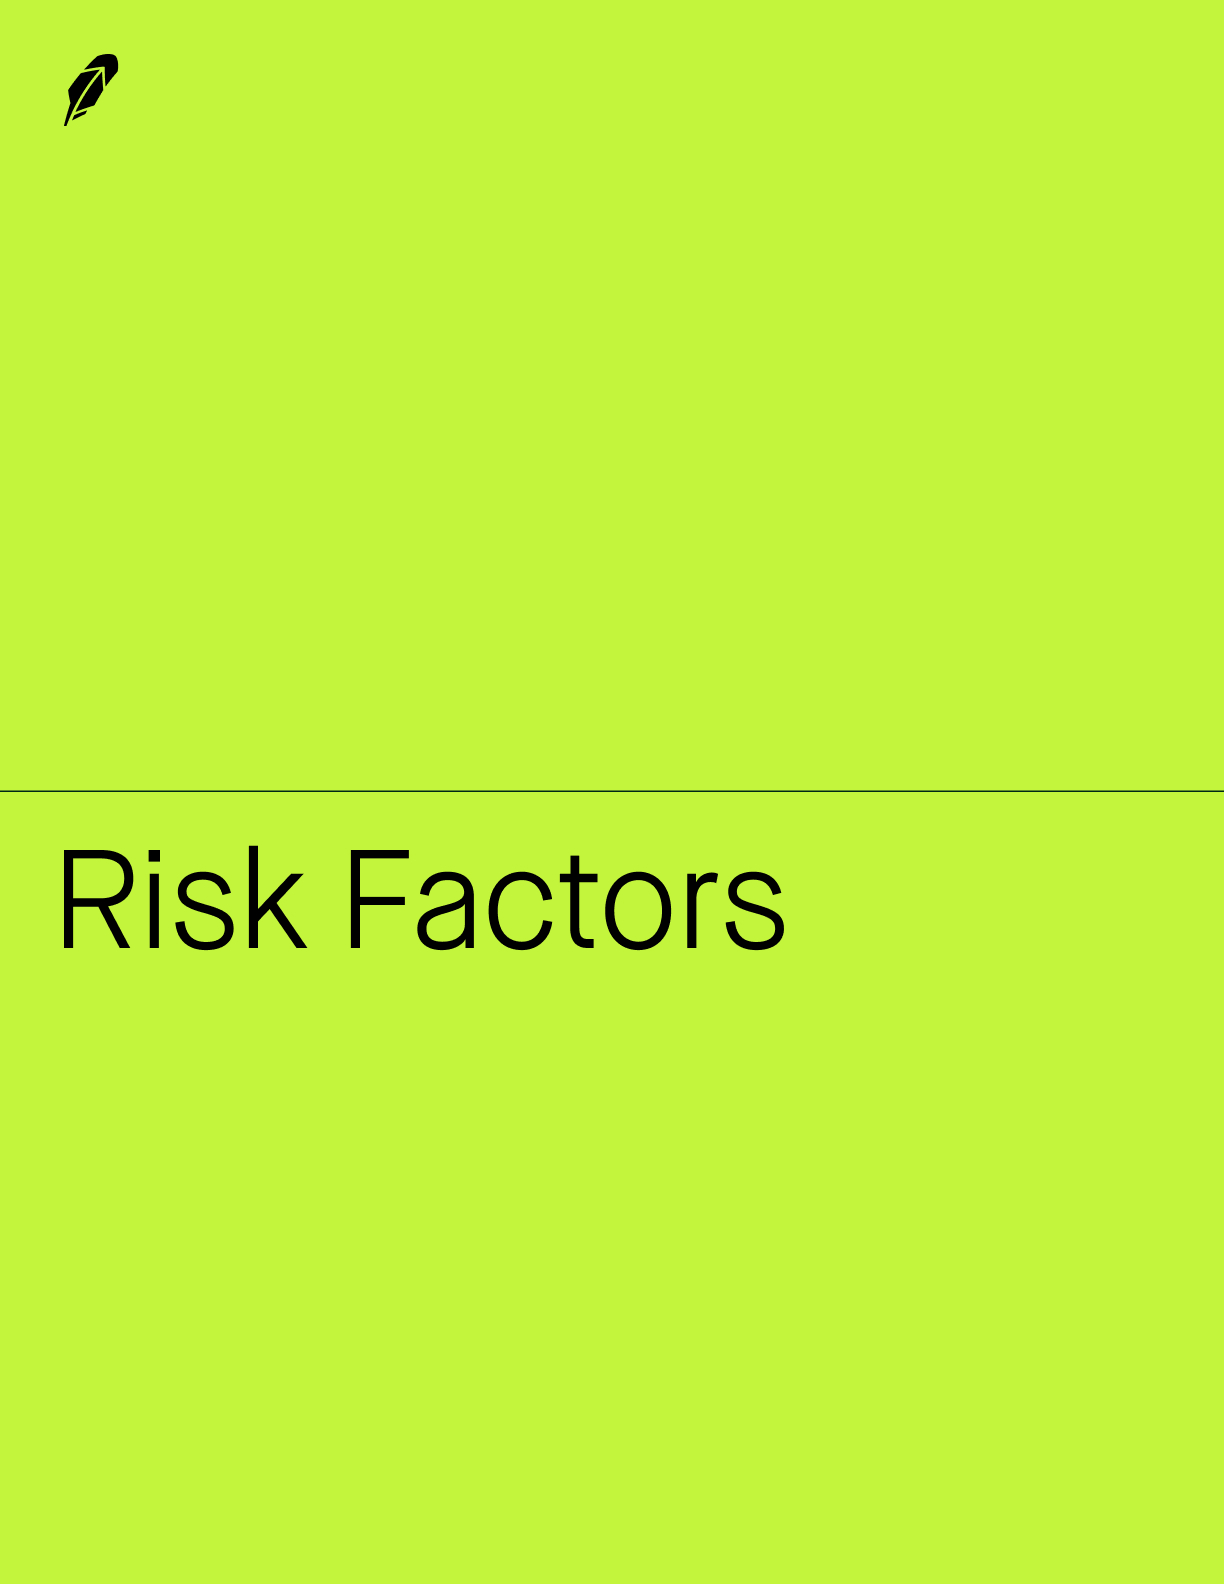 riskfactors1b.jpg